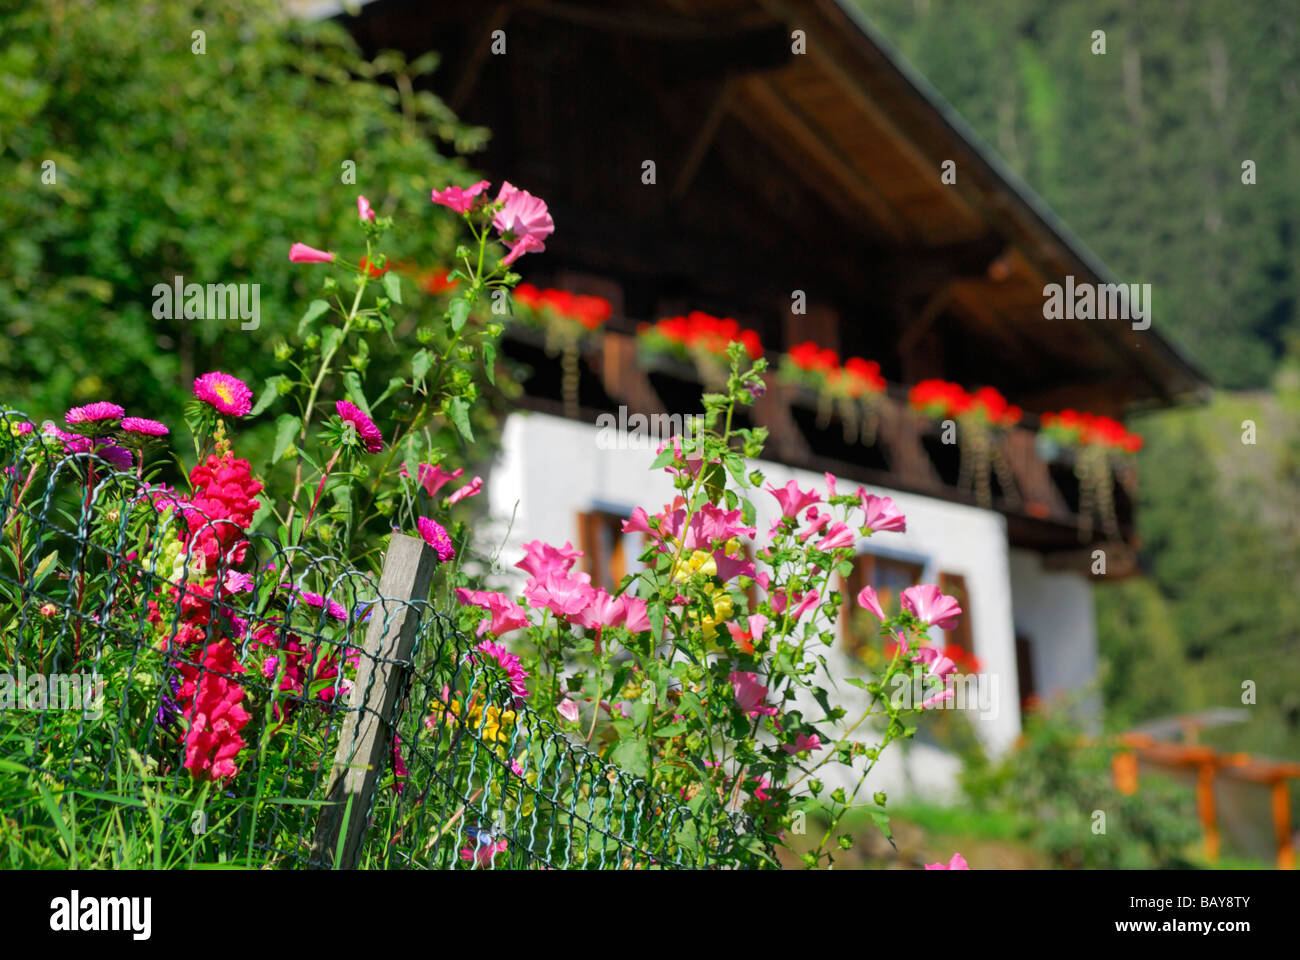 garden of farmhouse with farmhouse out of focus in background, Tribulaun range, Stubaier Alpen range, Stubai, South Tyrol, Italy Stock Photo